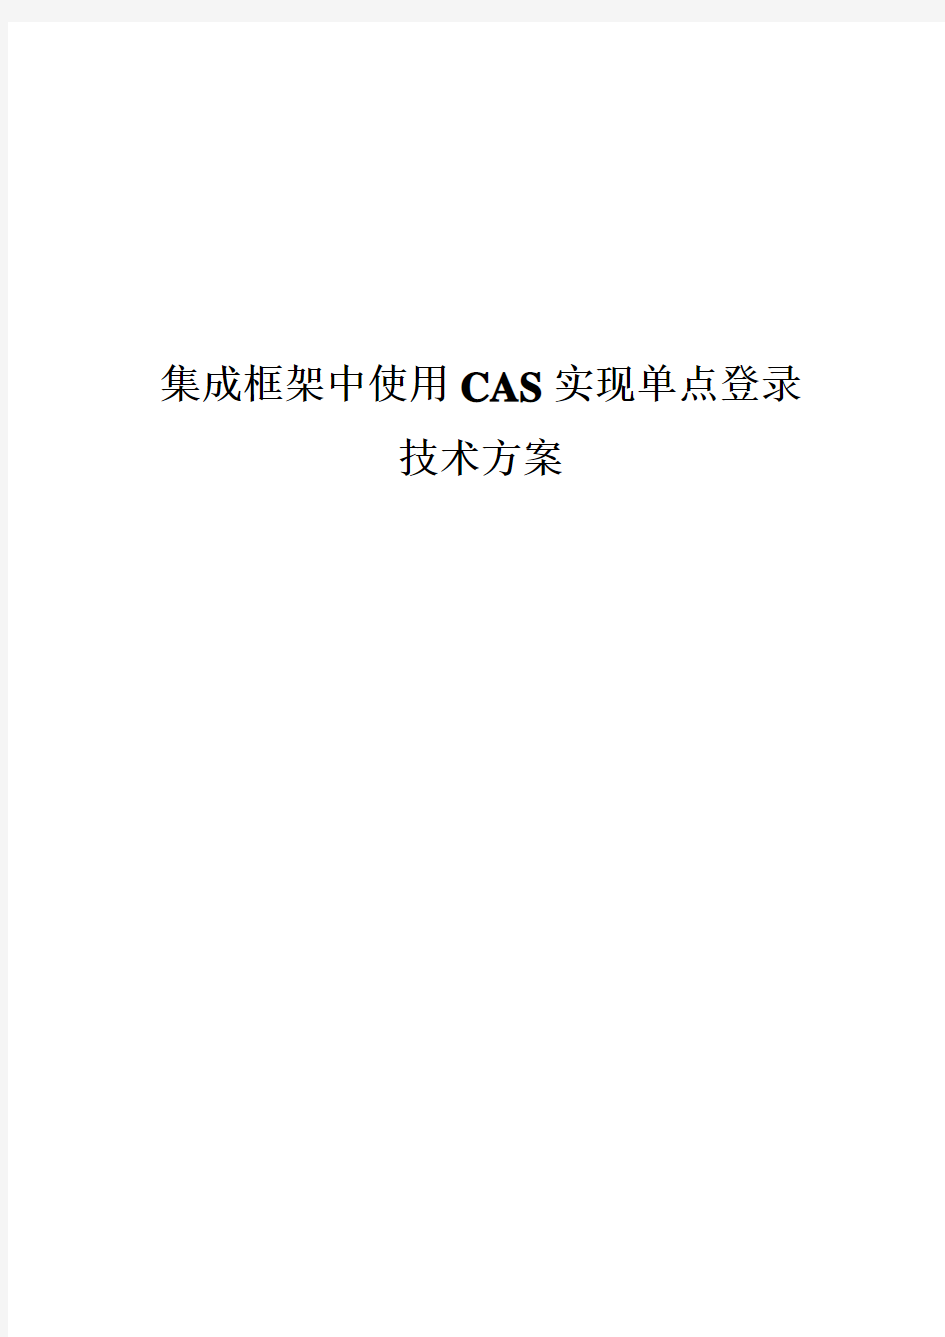 集成框架中使用CAS实现单点登录技术方案